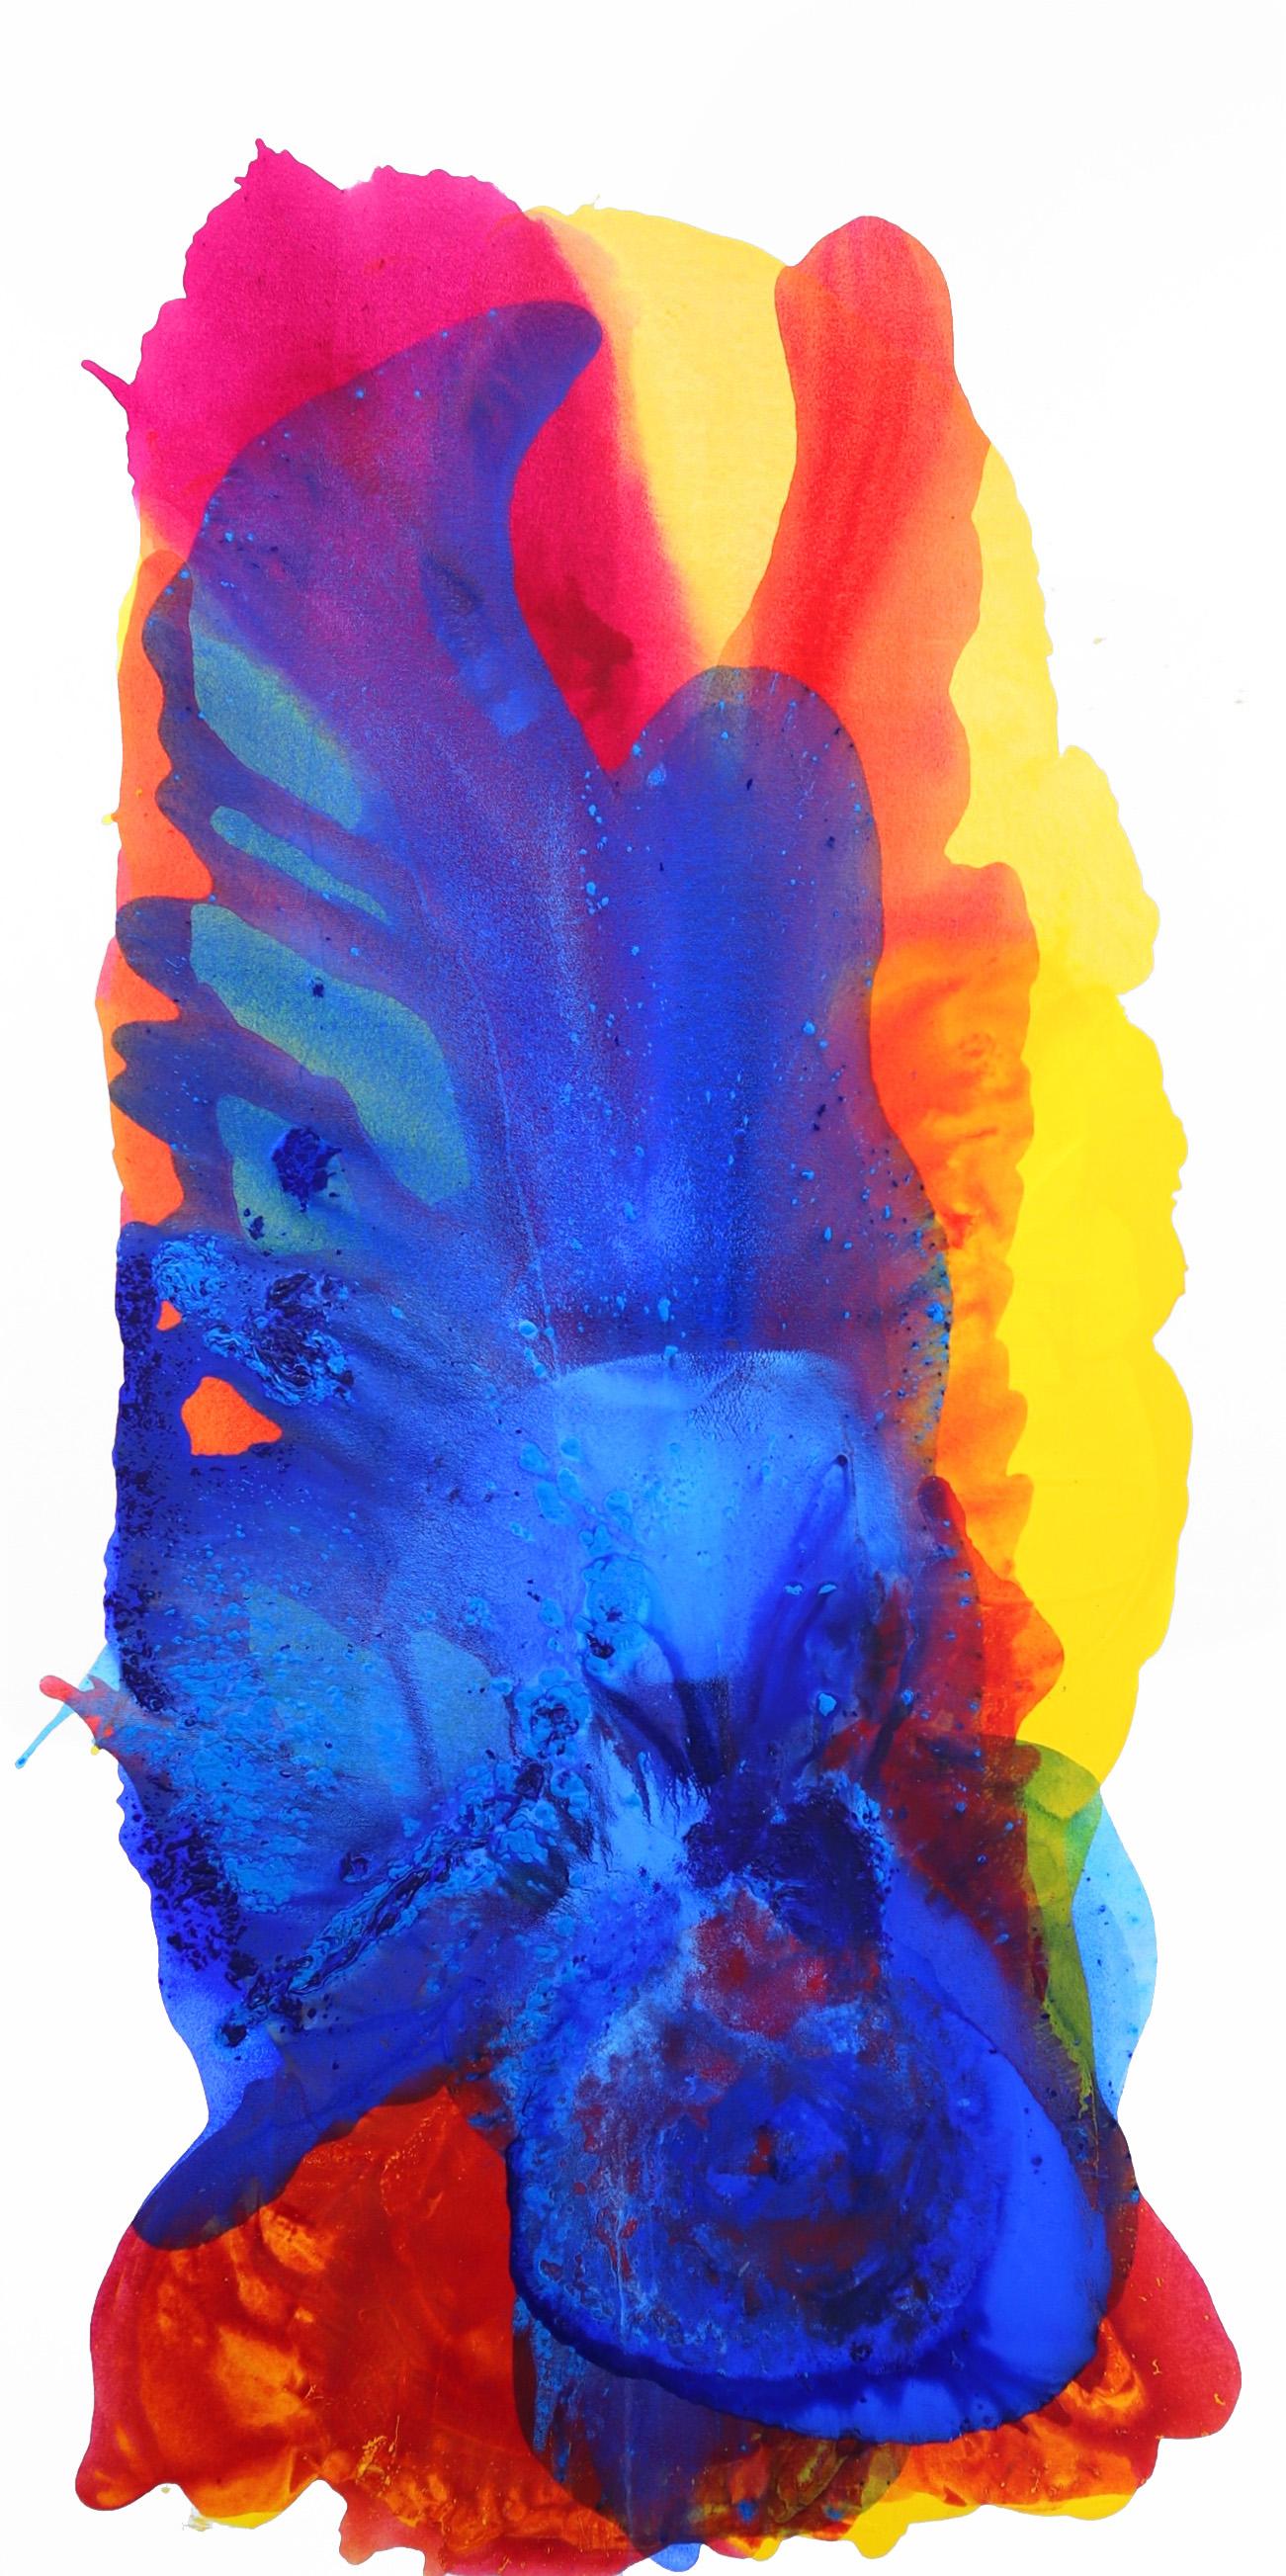 Nuit magique  -  Grande peinture abstraite colorée bleu, rouge et jaune surdimensionnée - Mixed Media Art de Clara Berta